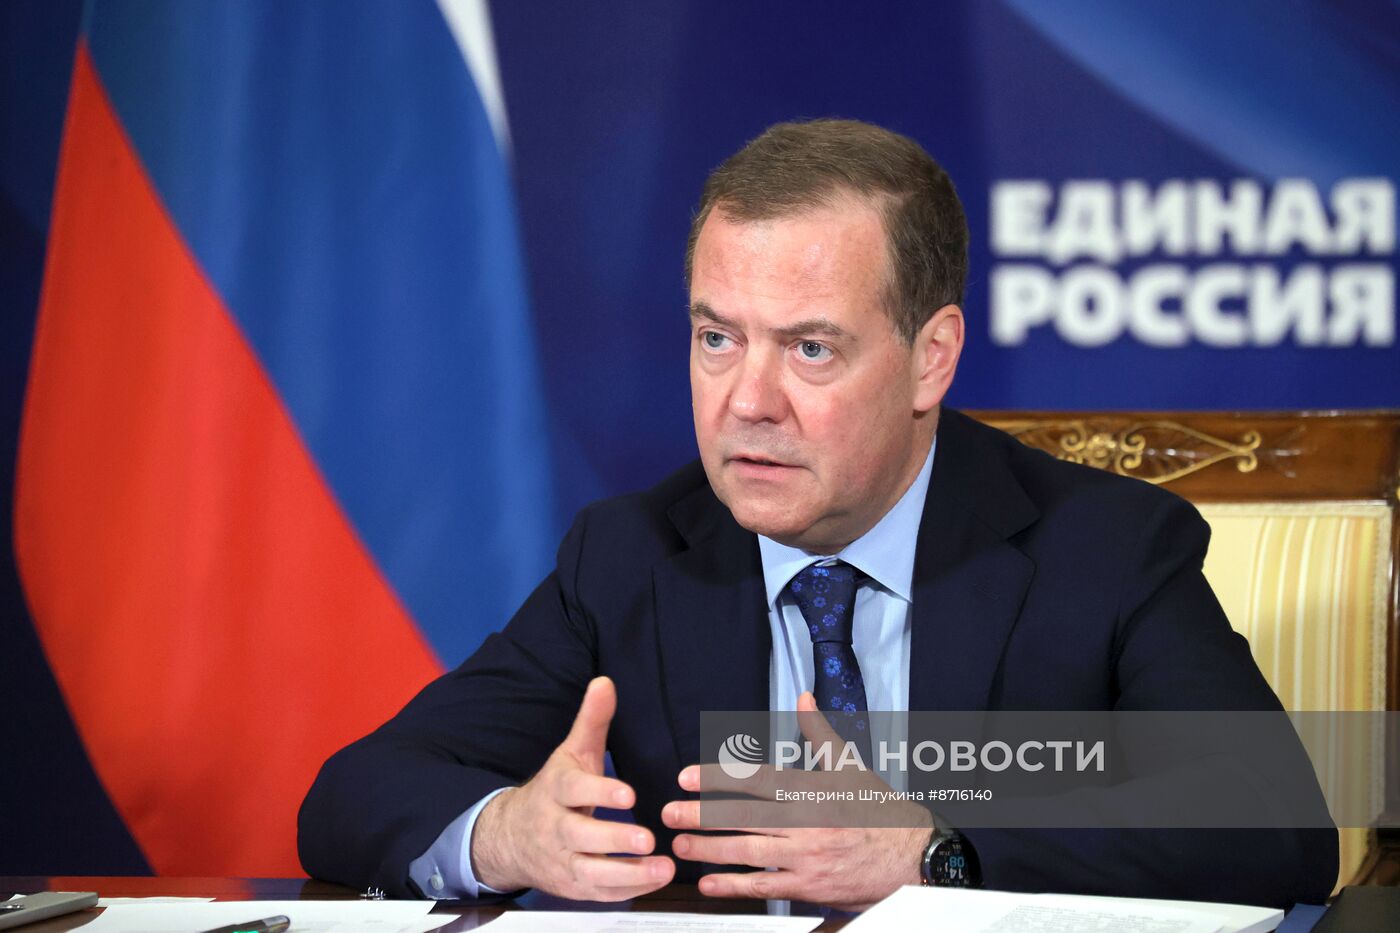 Председатель партии "Единая Россия" Дмитрий Медведев провел встречу с кандидатами на должности секретарей региональных отделений